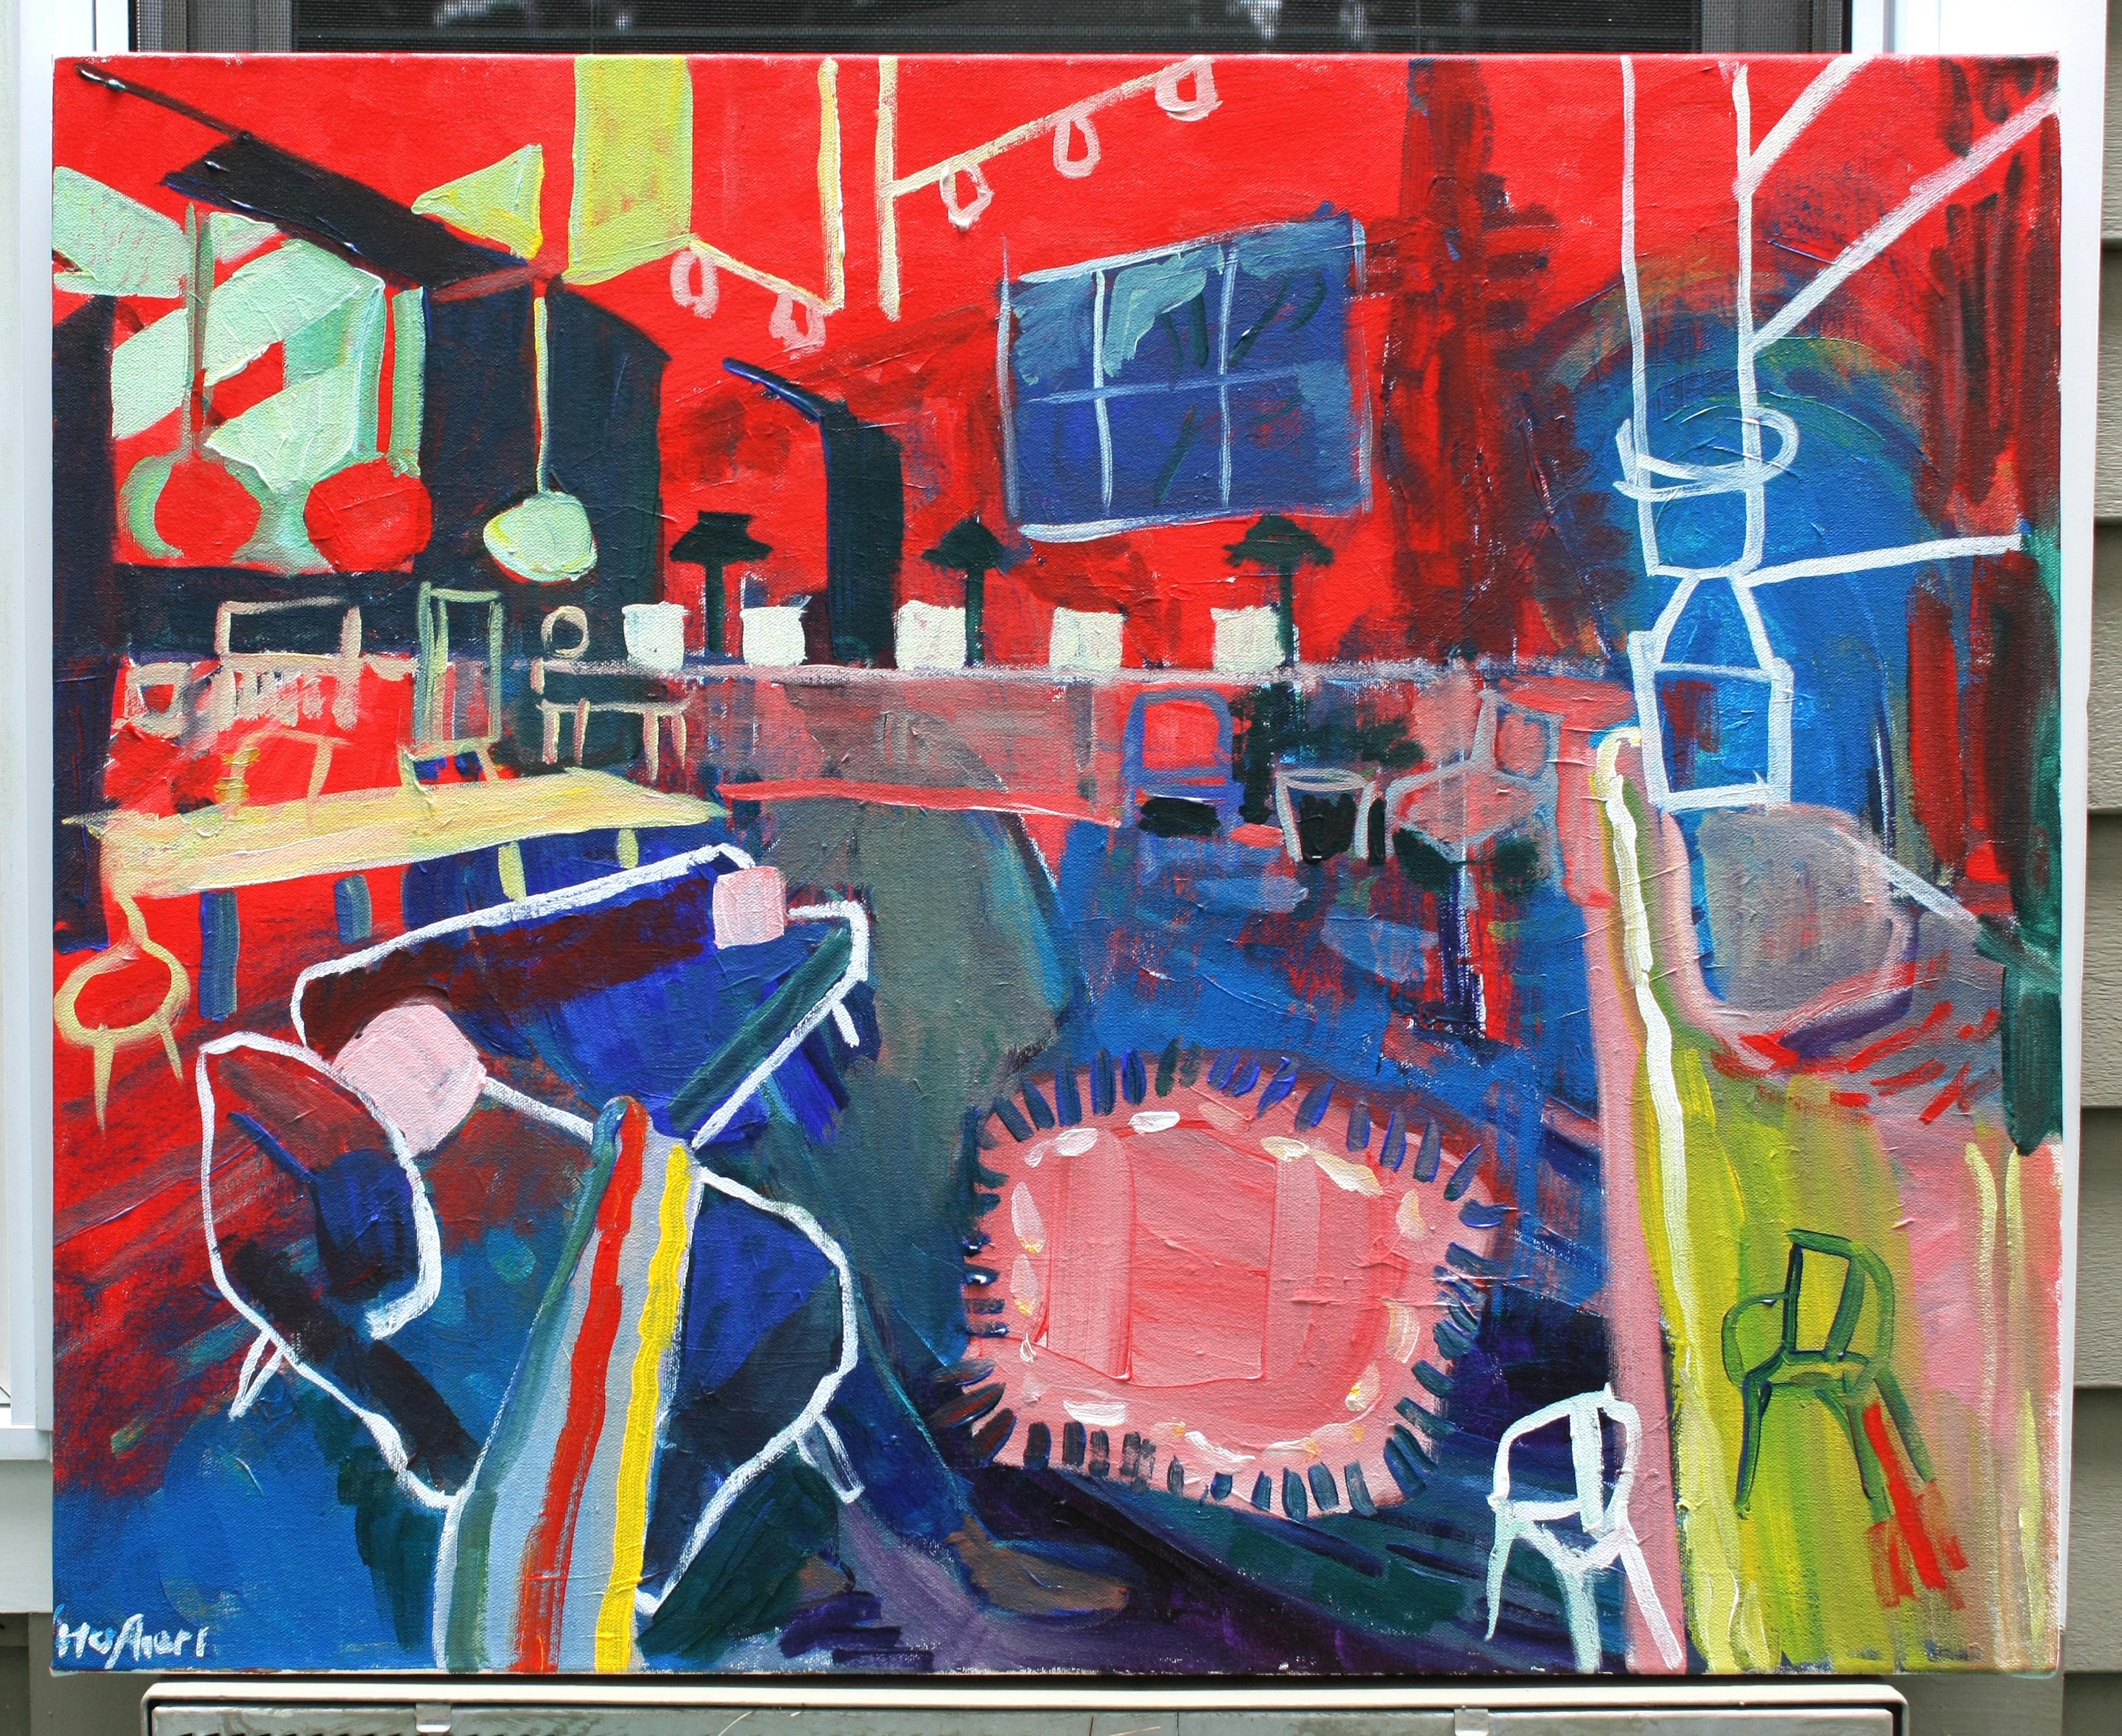 <p>Kommentare des Künstlers<br>Der Künstler Robert Hofherr malt ein geräumiges, modernes Loft im fauvistischen Stil. Er beginnt das Gemälde mit einer lebendigen Untermalung, einem lebhaften Tanz von Rot und Blau, und schmückt es dann mit zarten